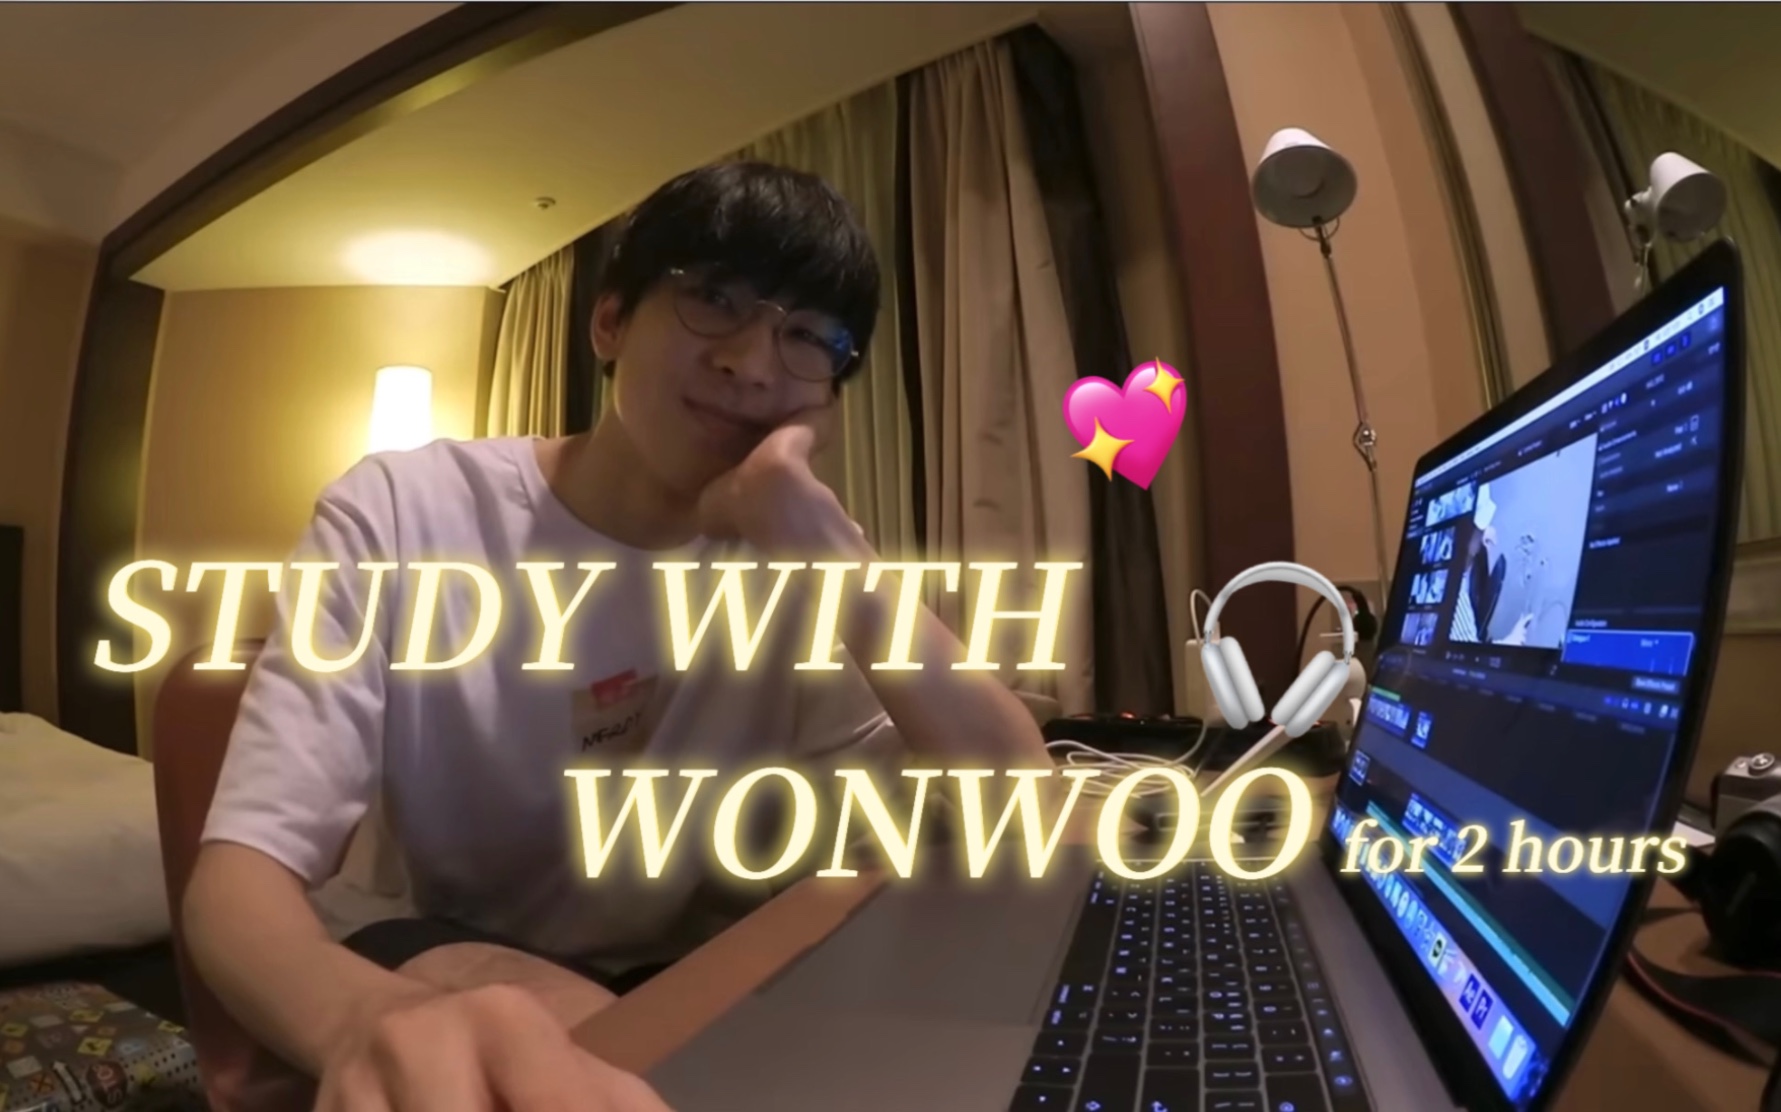 【全圆佑】Study with Wonwoo | seventeen钢琴曲+雨声背景音 | 2小时番茄钟 | 沉浸式自习室 | 陪伴学习工作